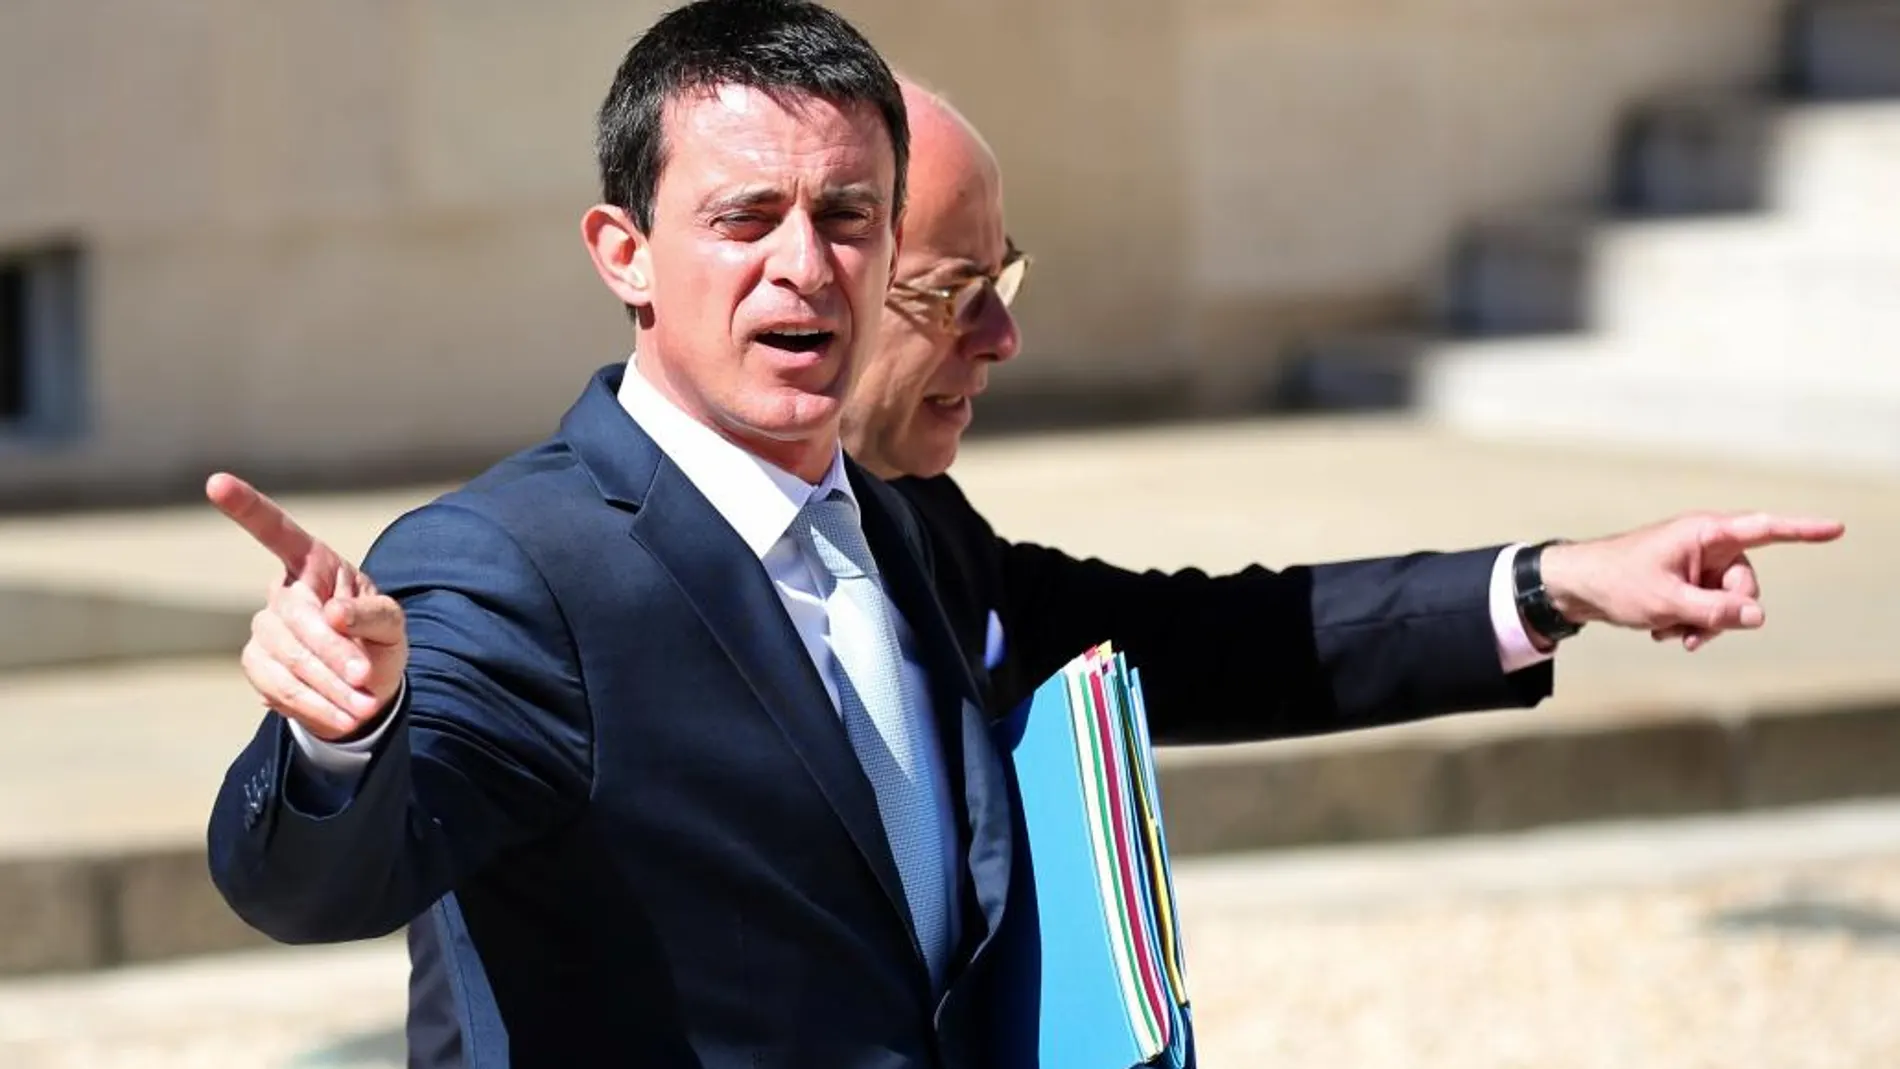 El primer ministro de Francia, Manuel Valls